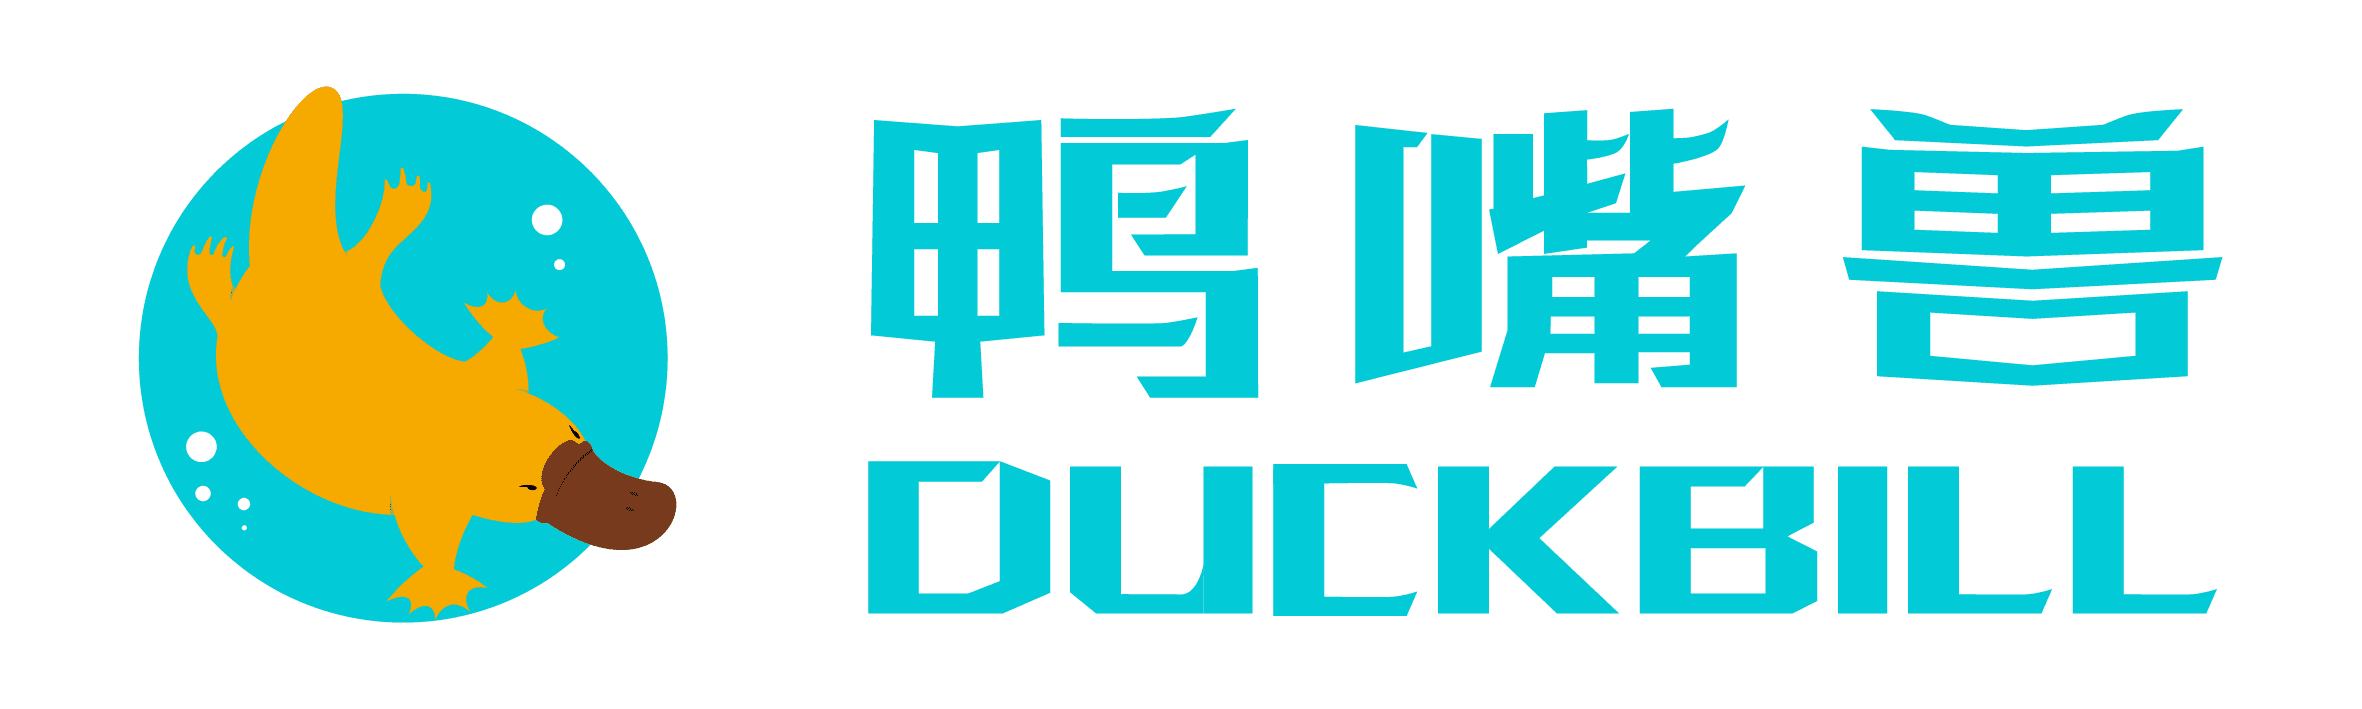 Duckbill Digital Supply Chain Management Ho Chi Minh Company Limited (Dscm HCM) tuyển dụng - Tìm việc mới nhất, lương thưởng hấp dẫn.